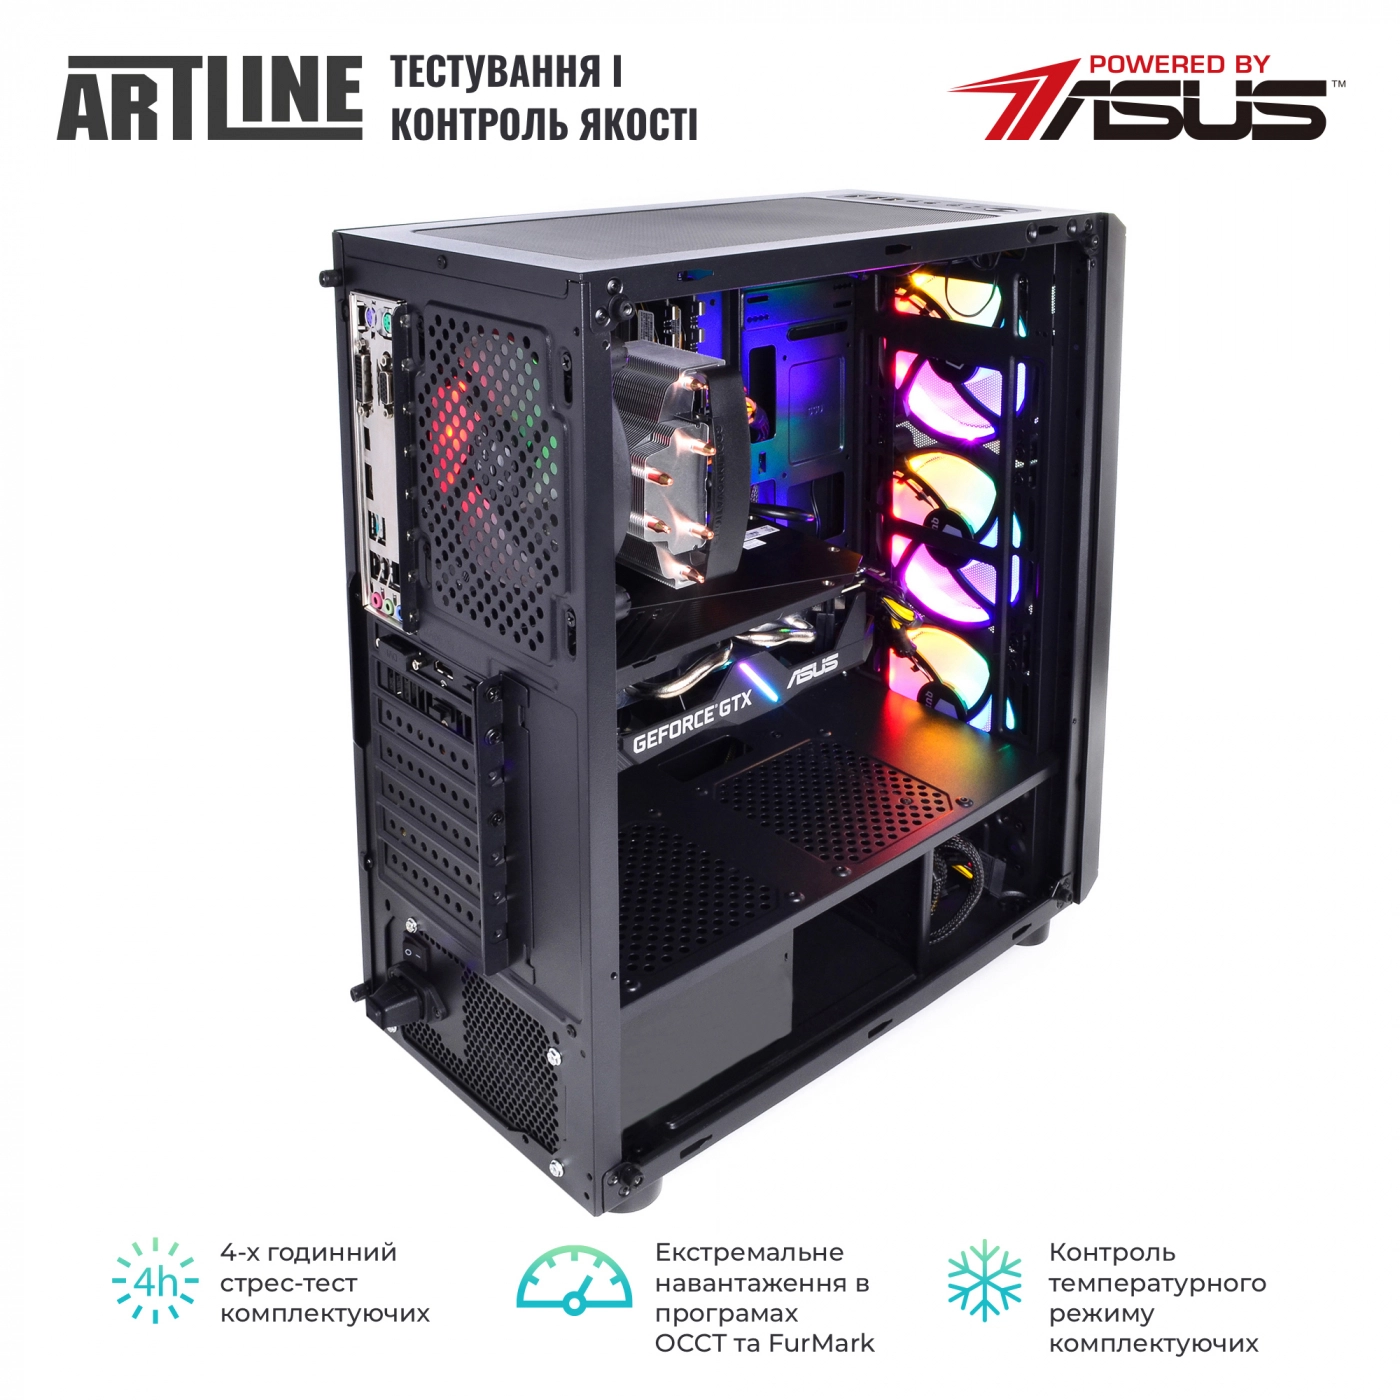 Купить Компьютер ARTLINE Gaming X47v41 - фото 8